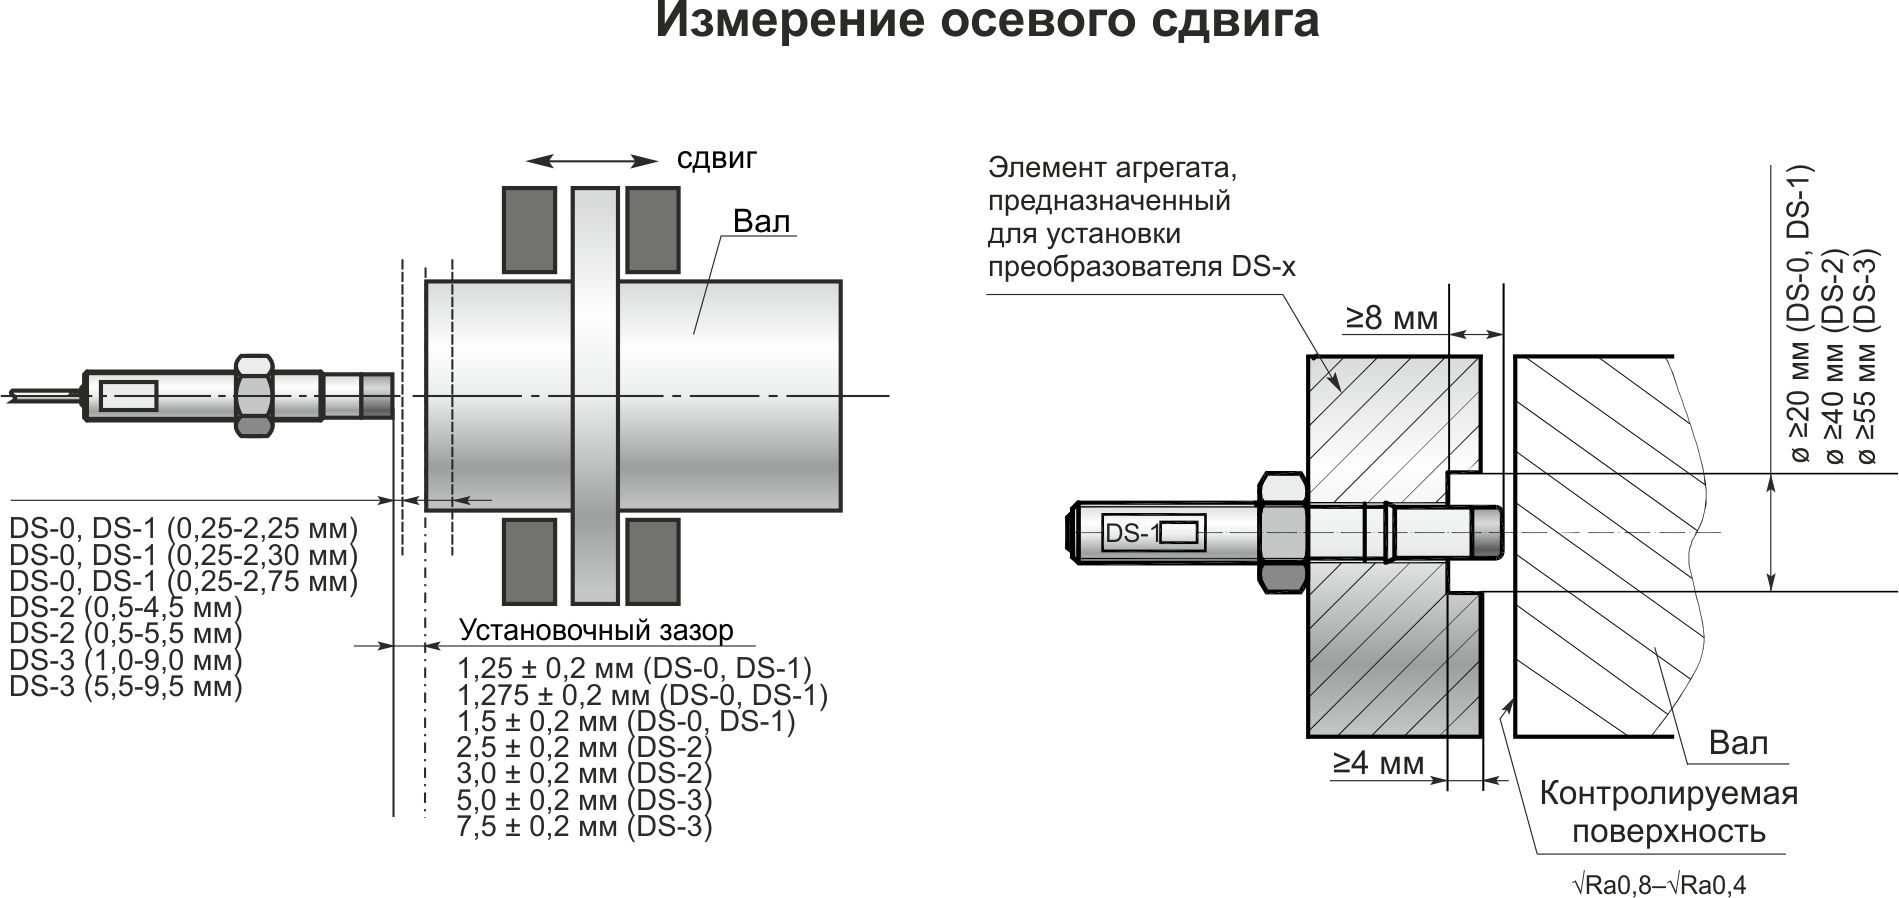 Типовая схема установки виброизмерительного канала ИКВ-1-4-1